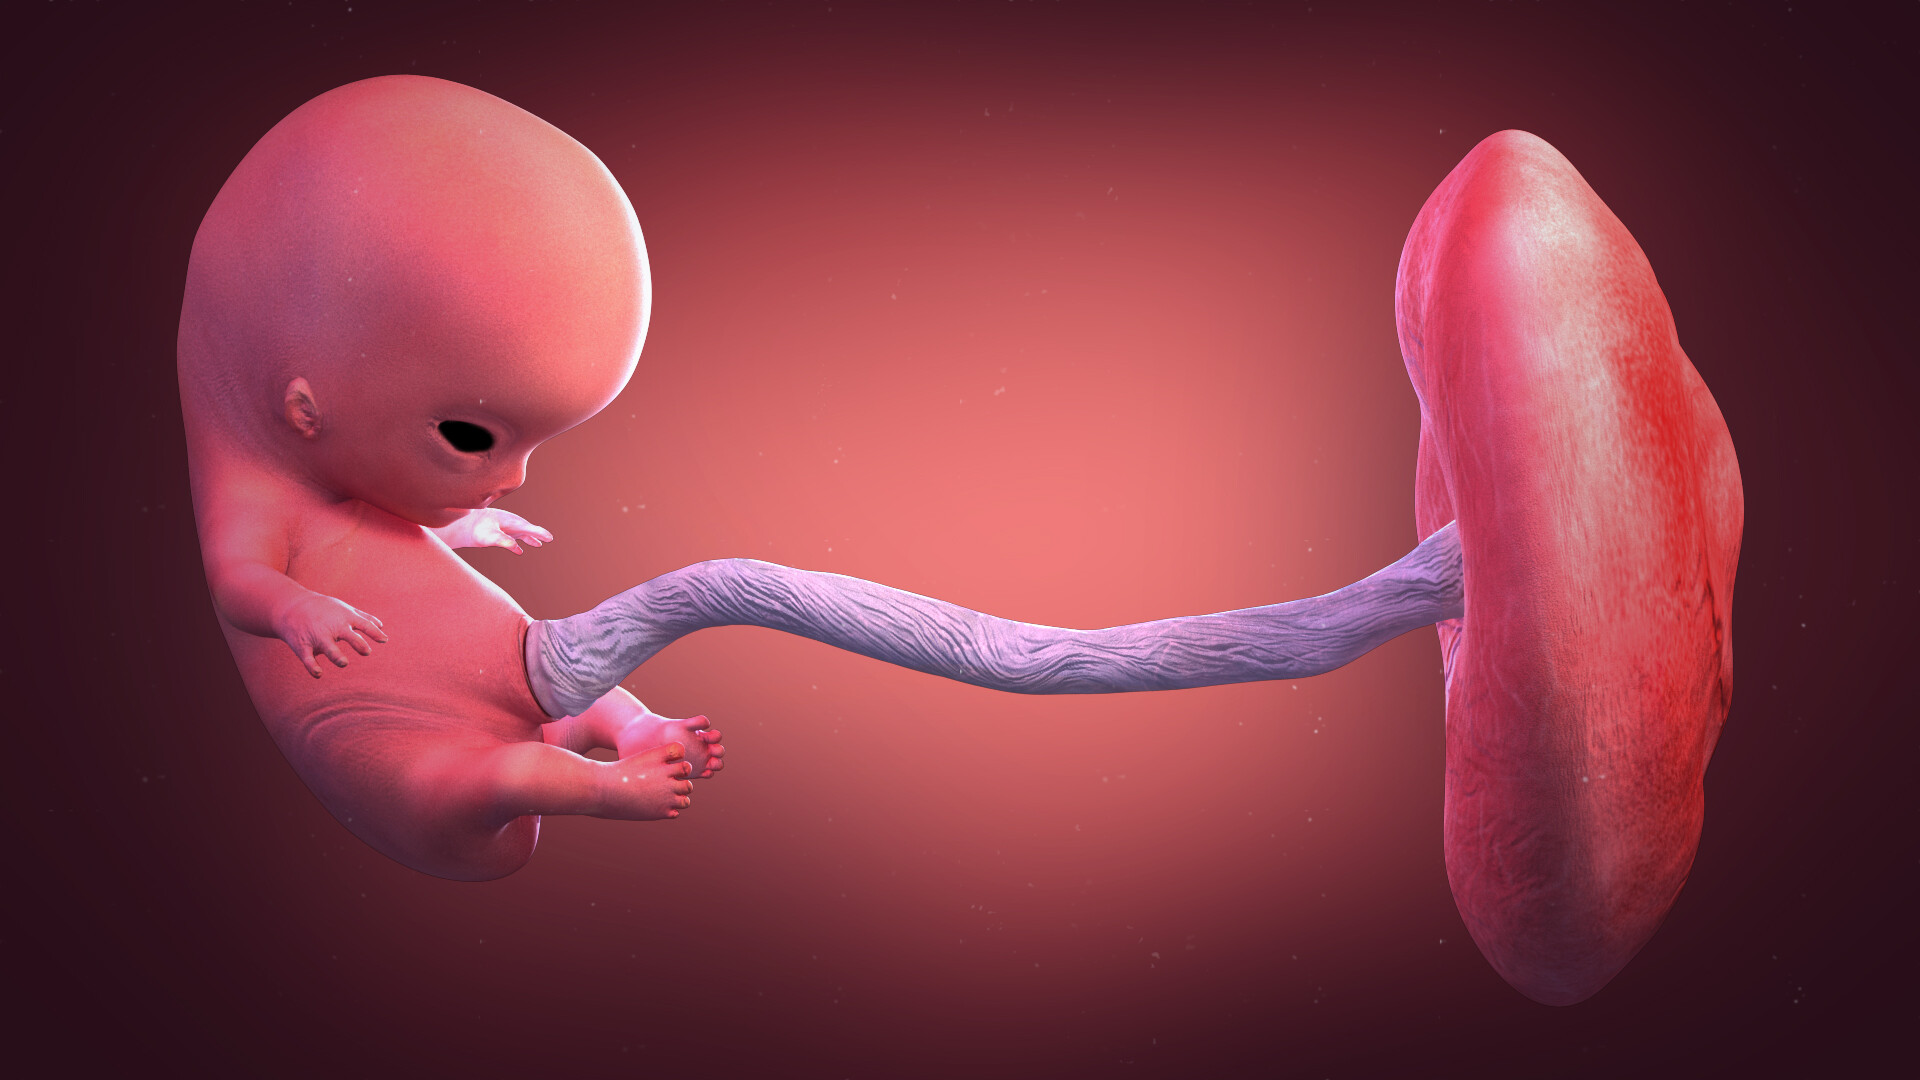 ArtStation - Fetal development animation (morphing work)